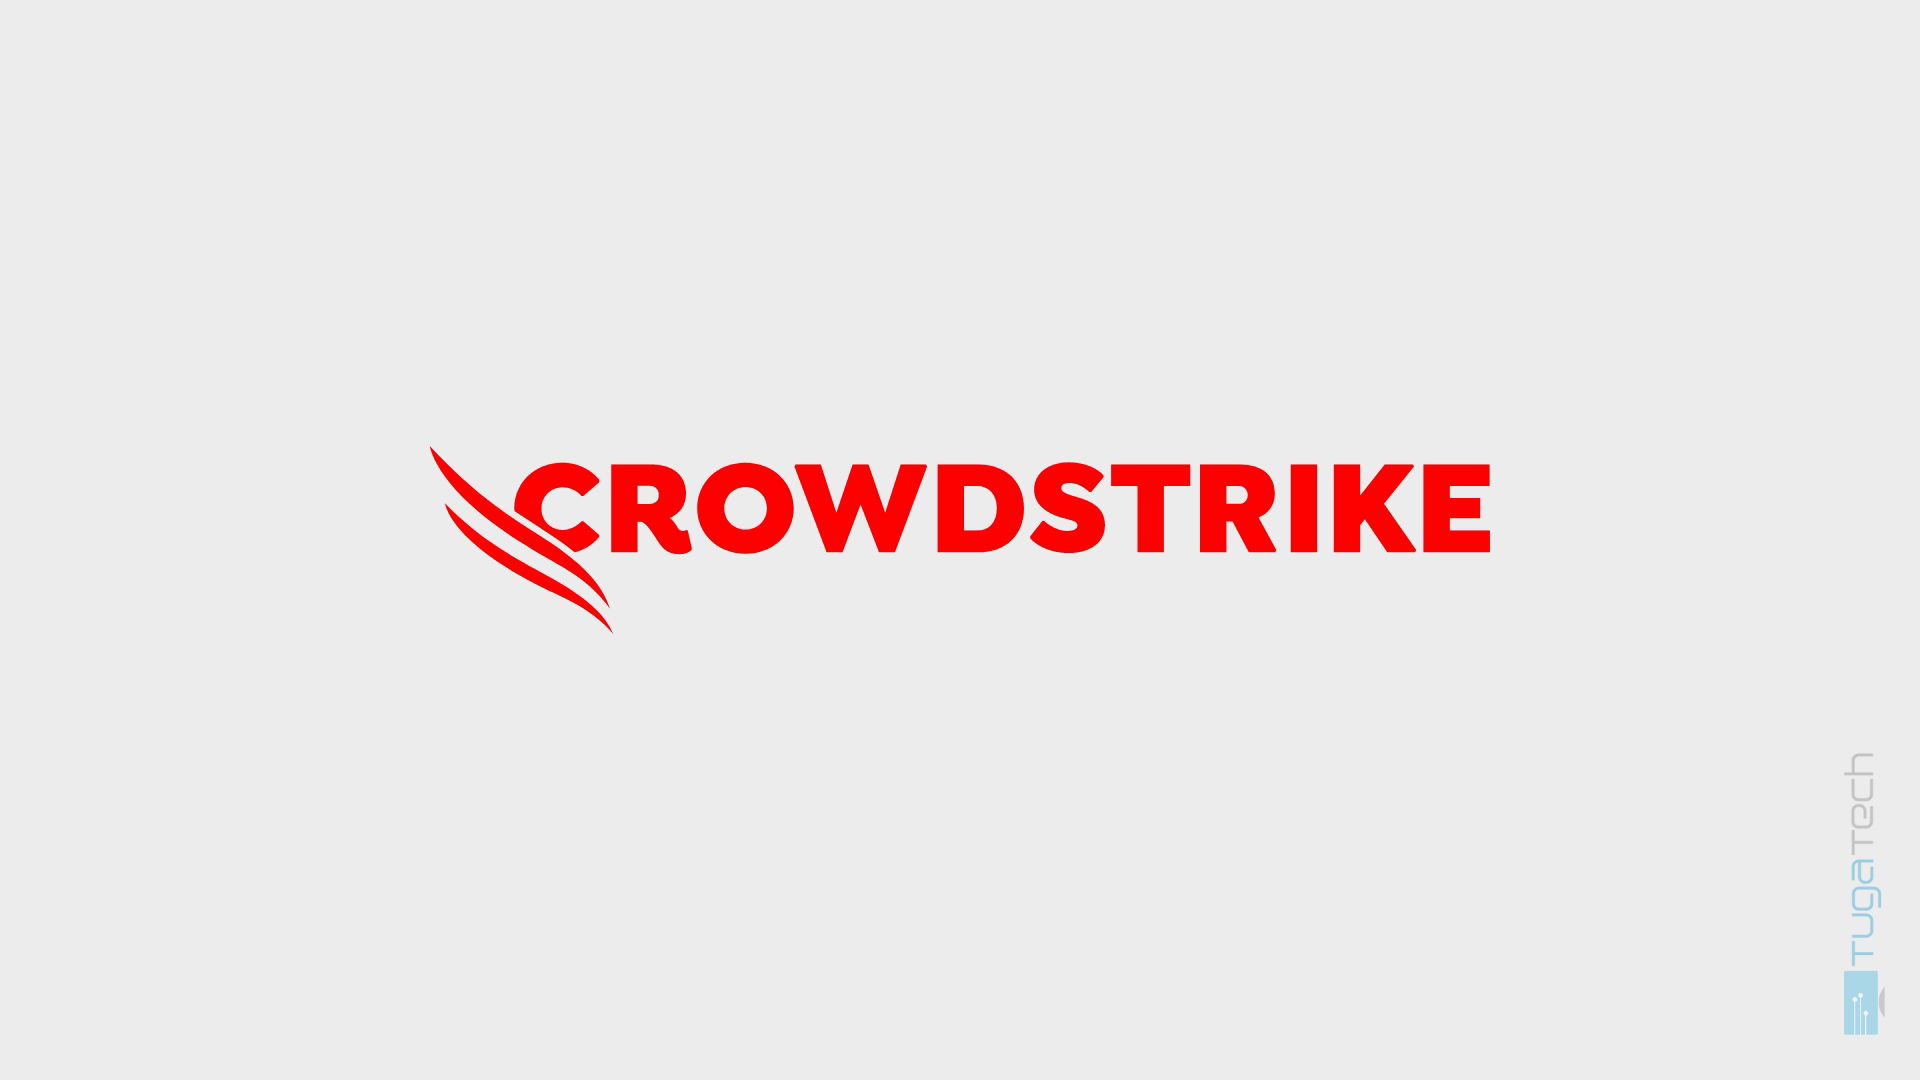 97% dos sistemas afetados pelo CrowdStrike estão de volta ao ativo